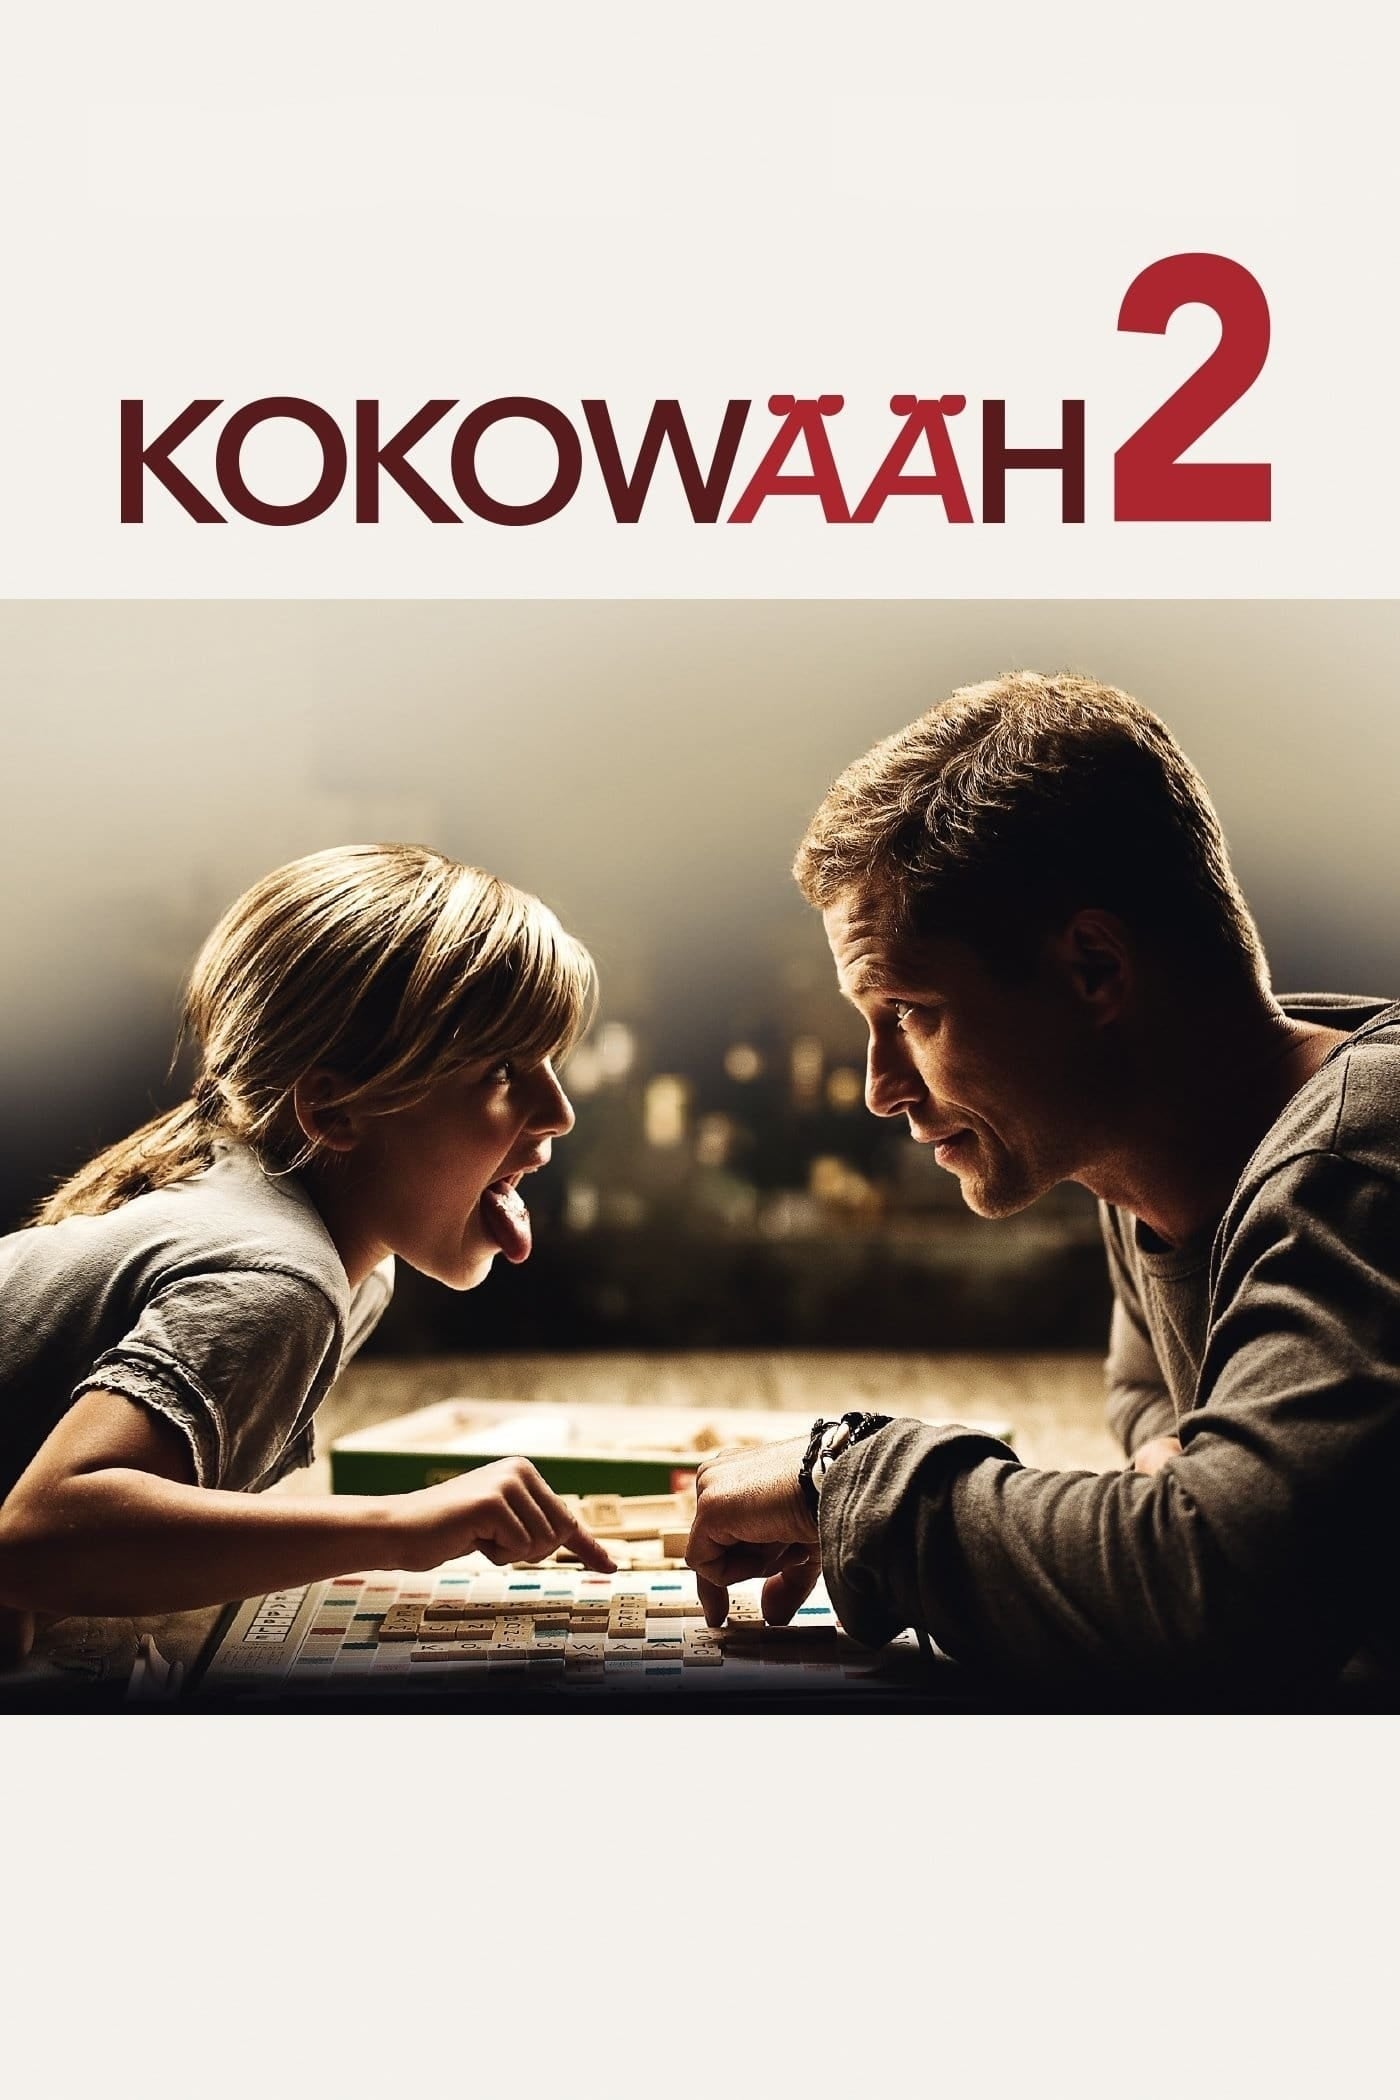 Plakat von "Kokowääh 2"